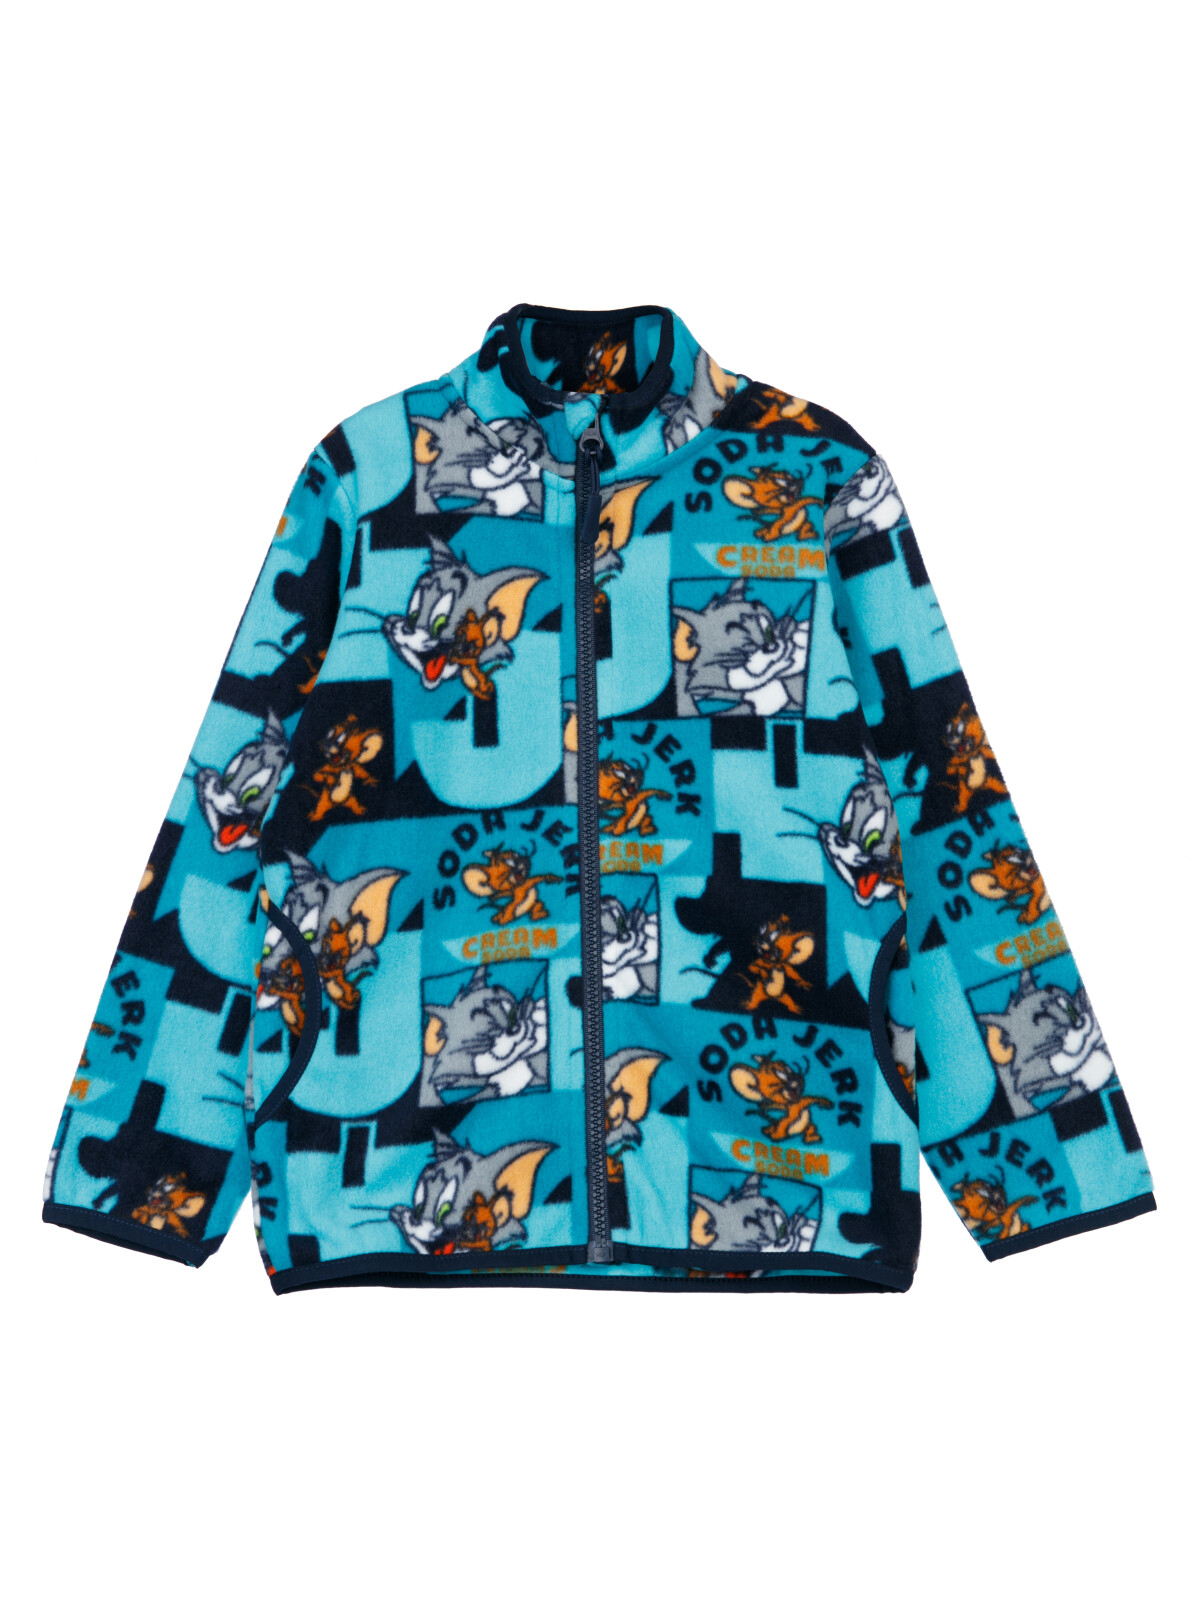 Куртка трикотажная для мальчиков PlayToday, цветной, 116